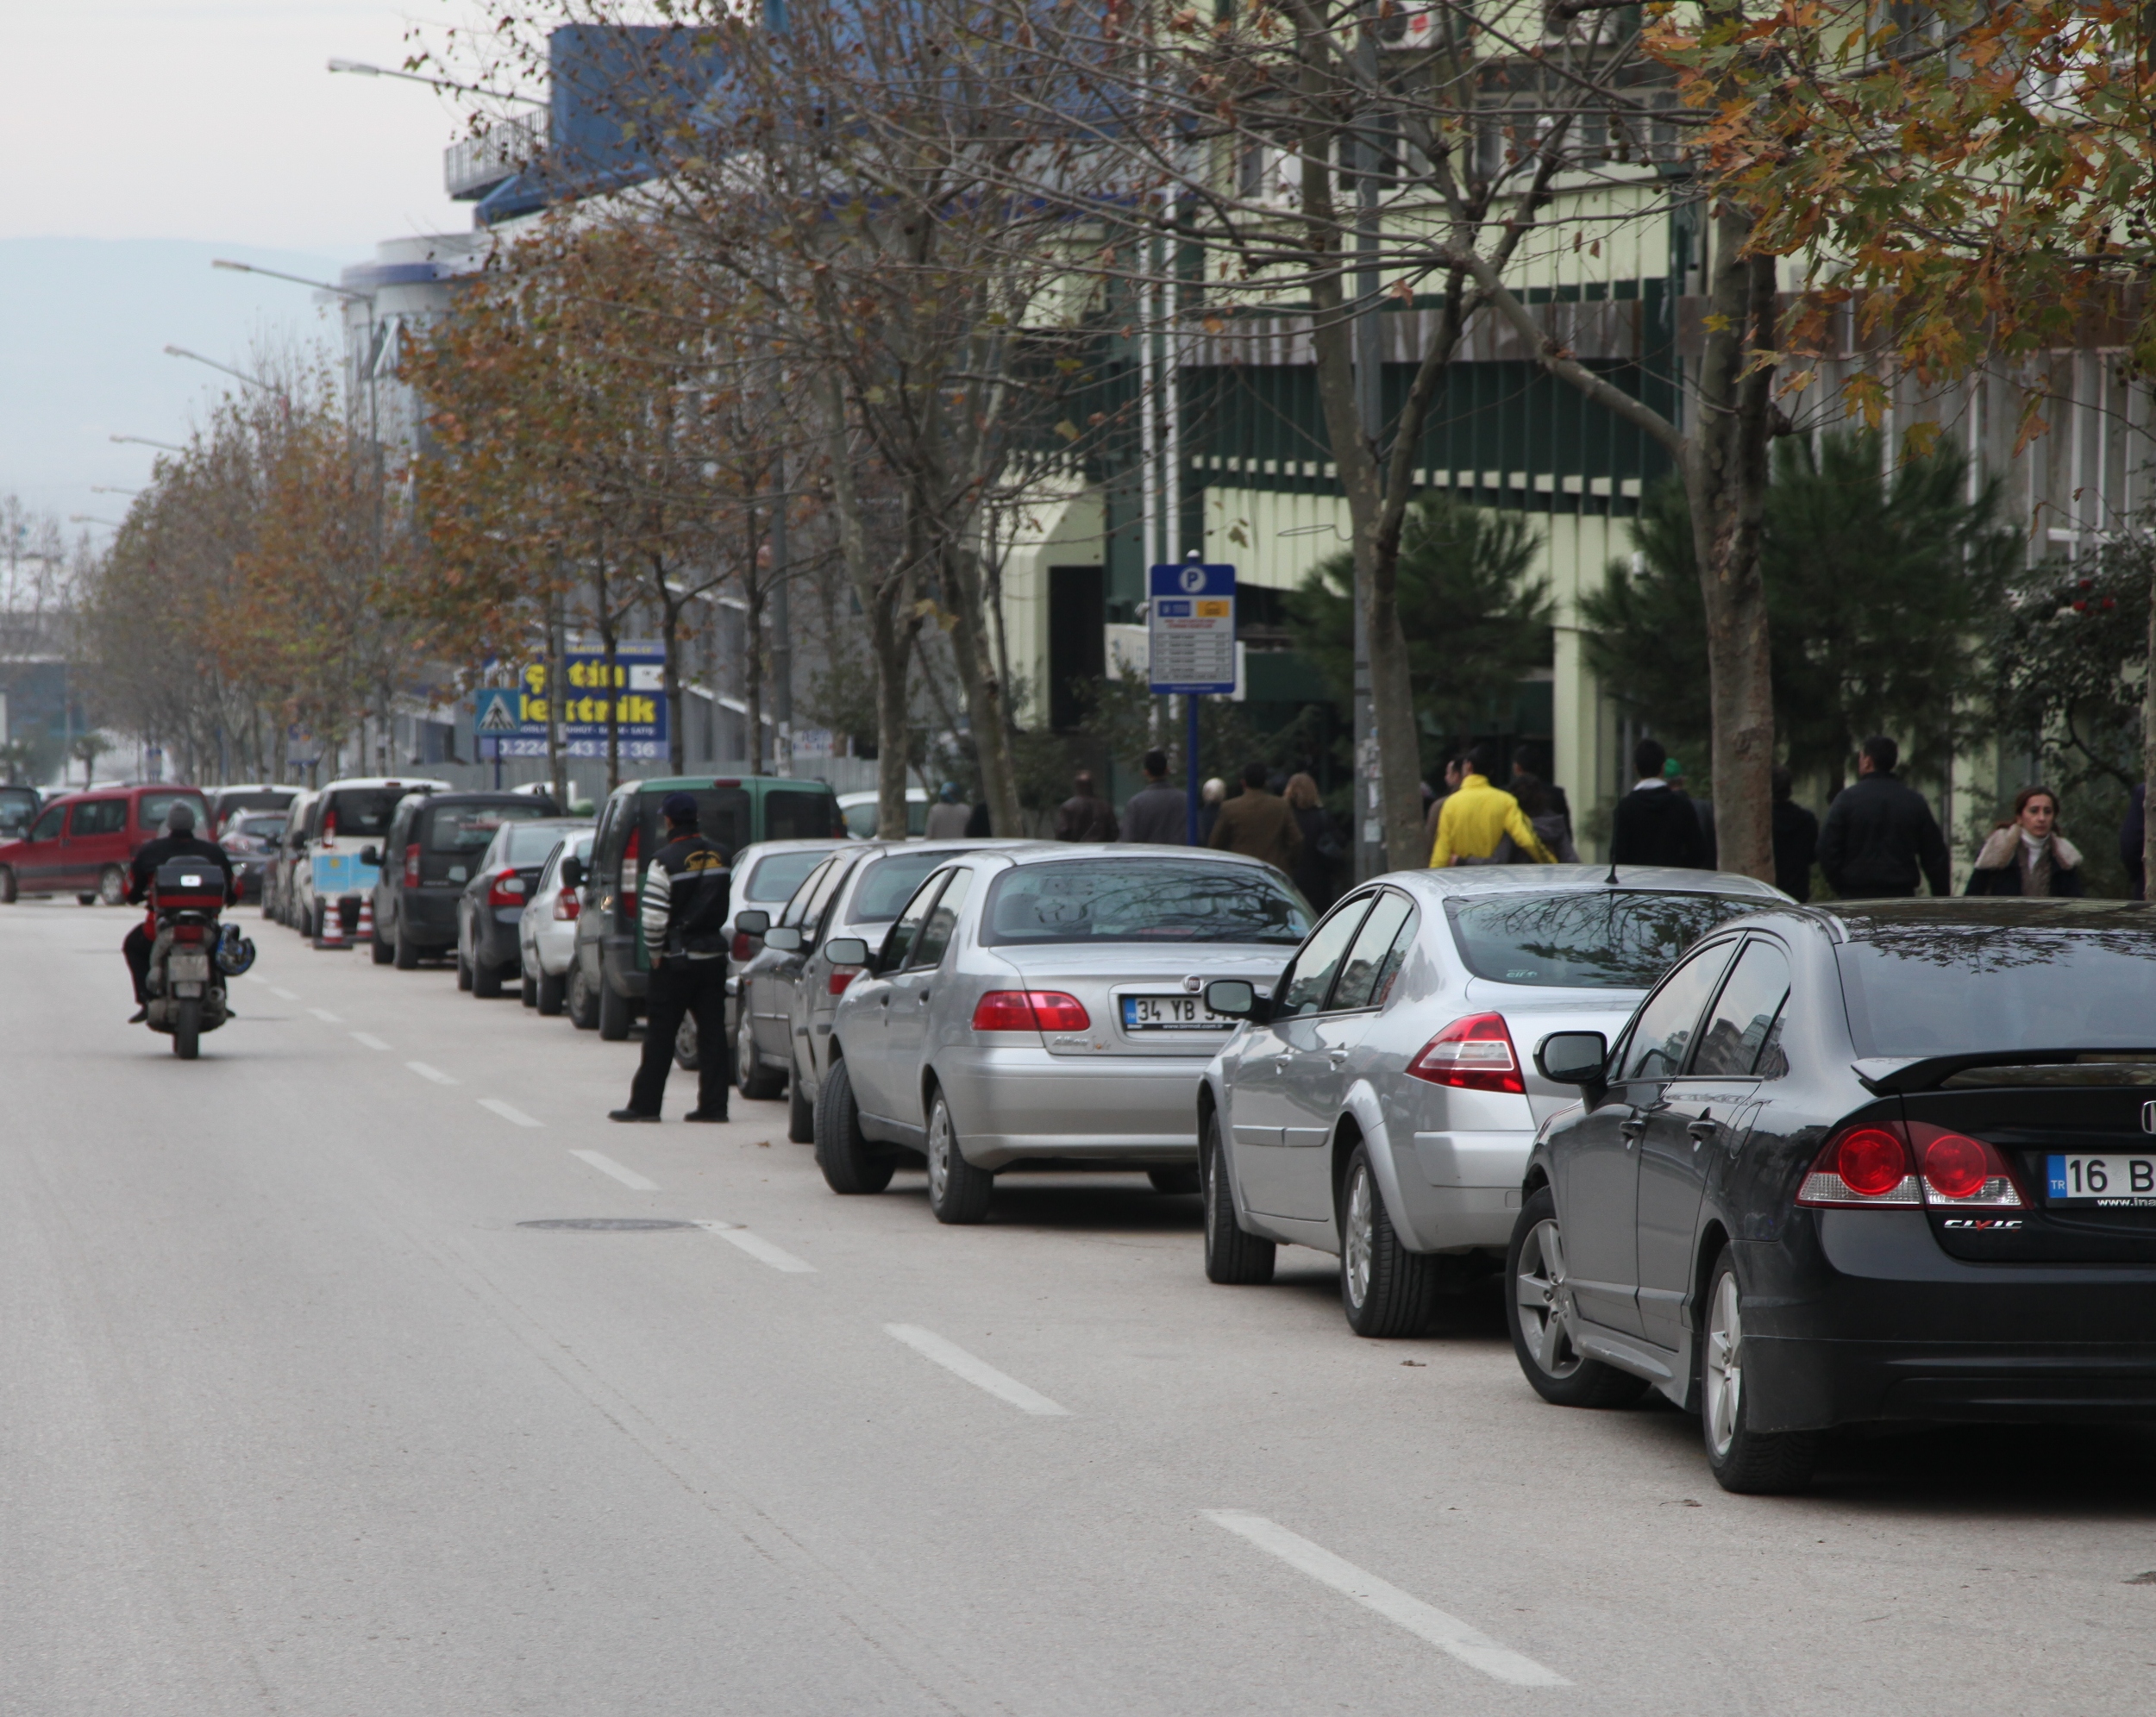 Bursa’da kamuya ait caddelerden alınan otopark ücreti kaldırılacak mı? 4